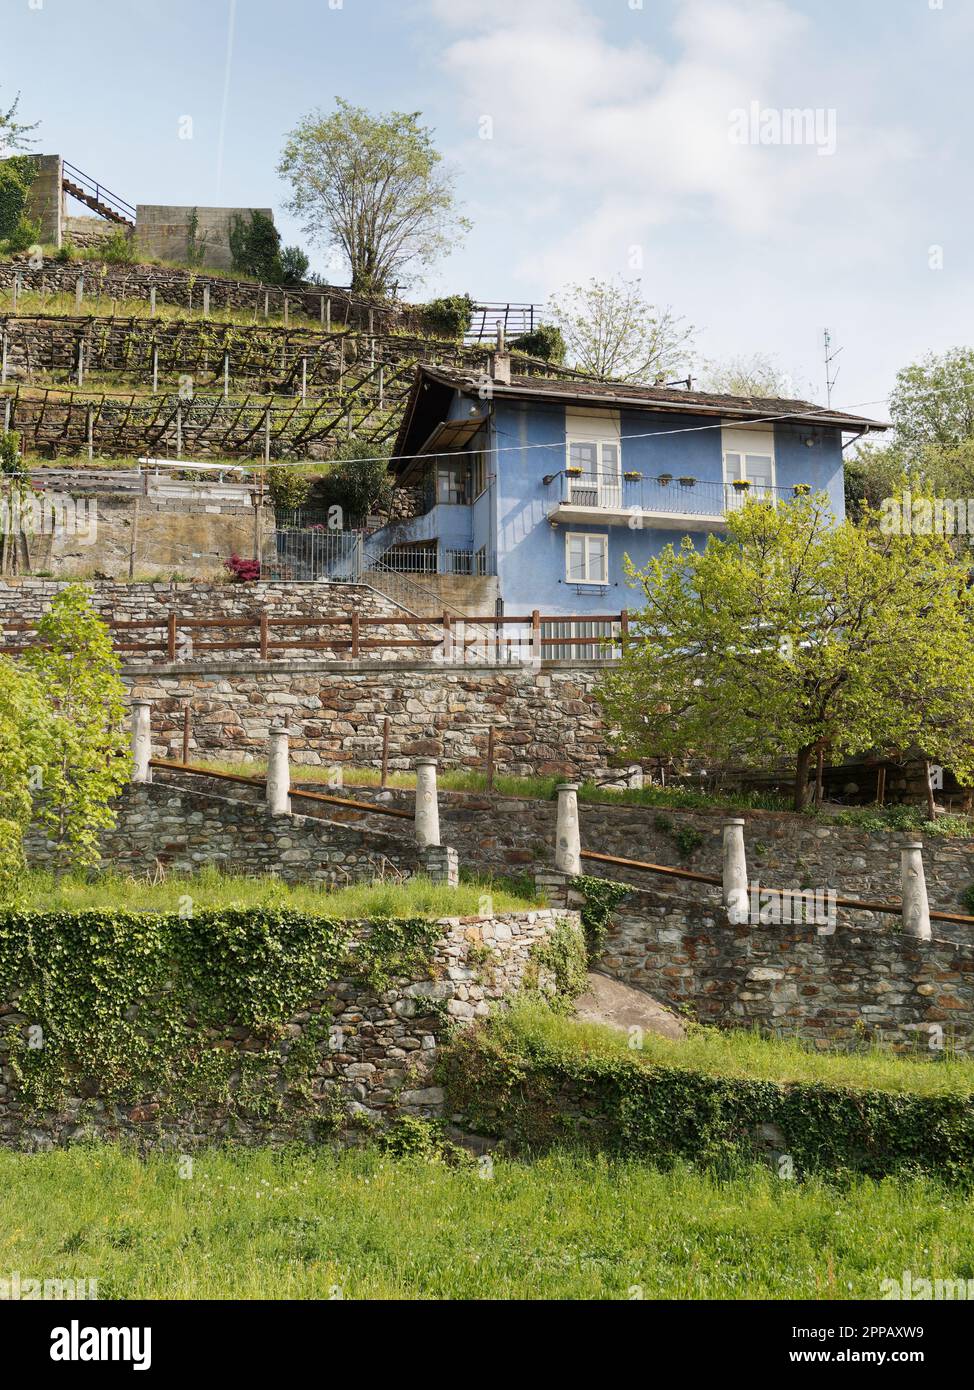 Vignobles en terrasses avec des murs de pierre dans la ville de Pont-Saint-Martin, Vallée d'Aoste, NW Italie Banque D'Images